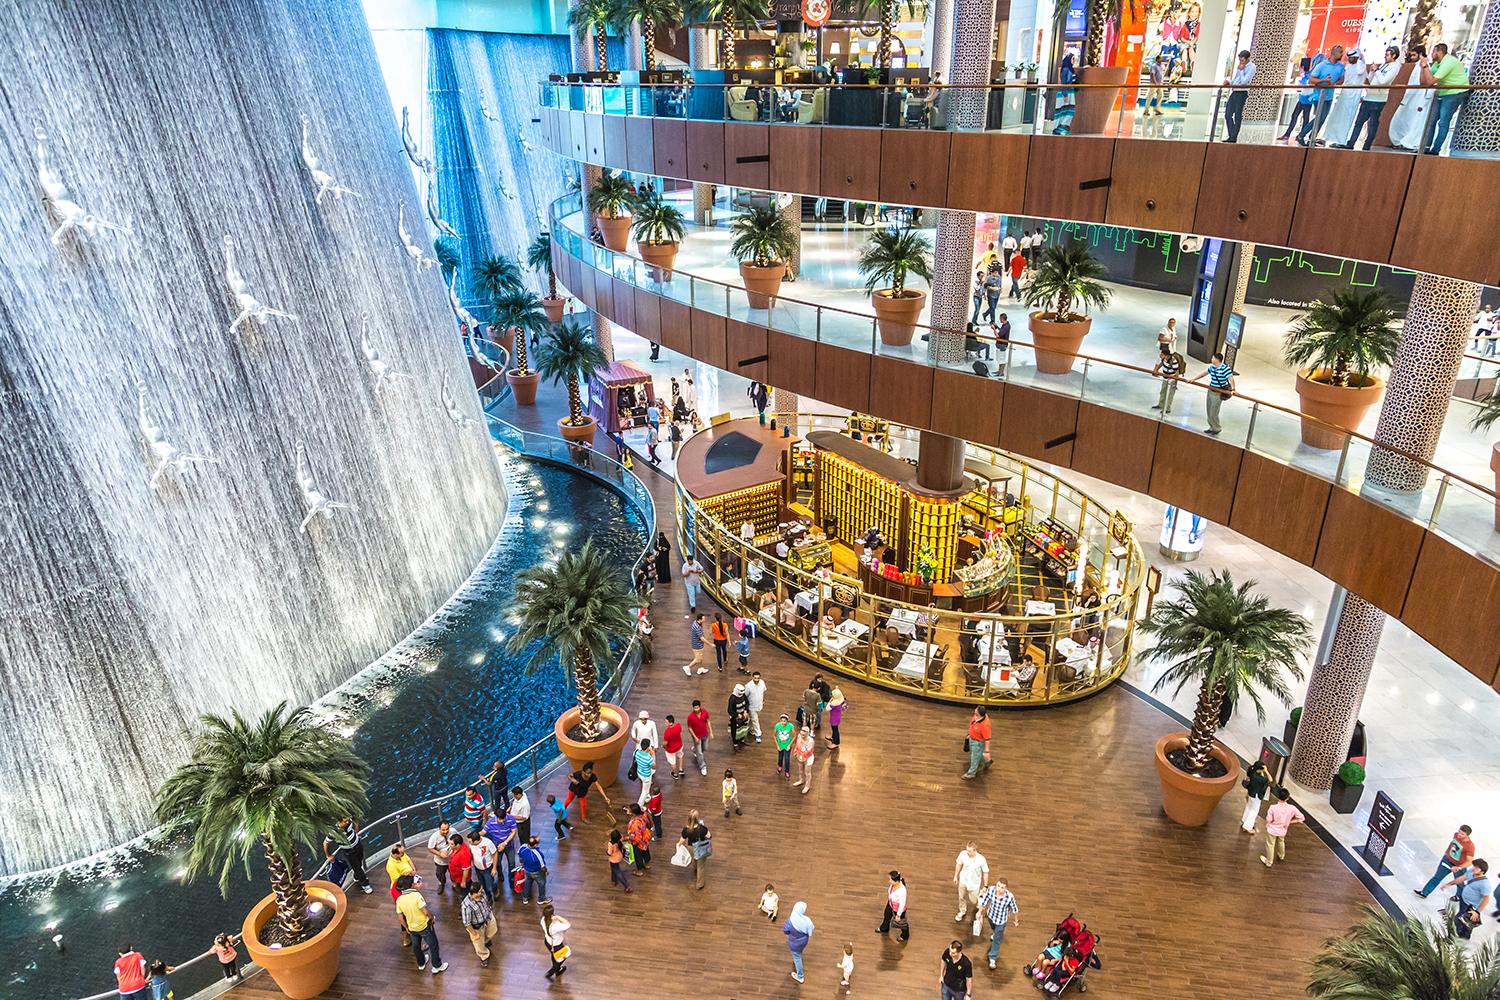 Tržni centar u Dubaiju najposjećenija turistička atrakcija na svijetu